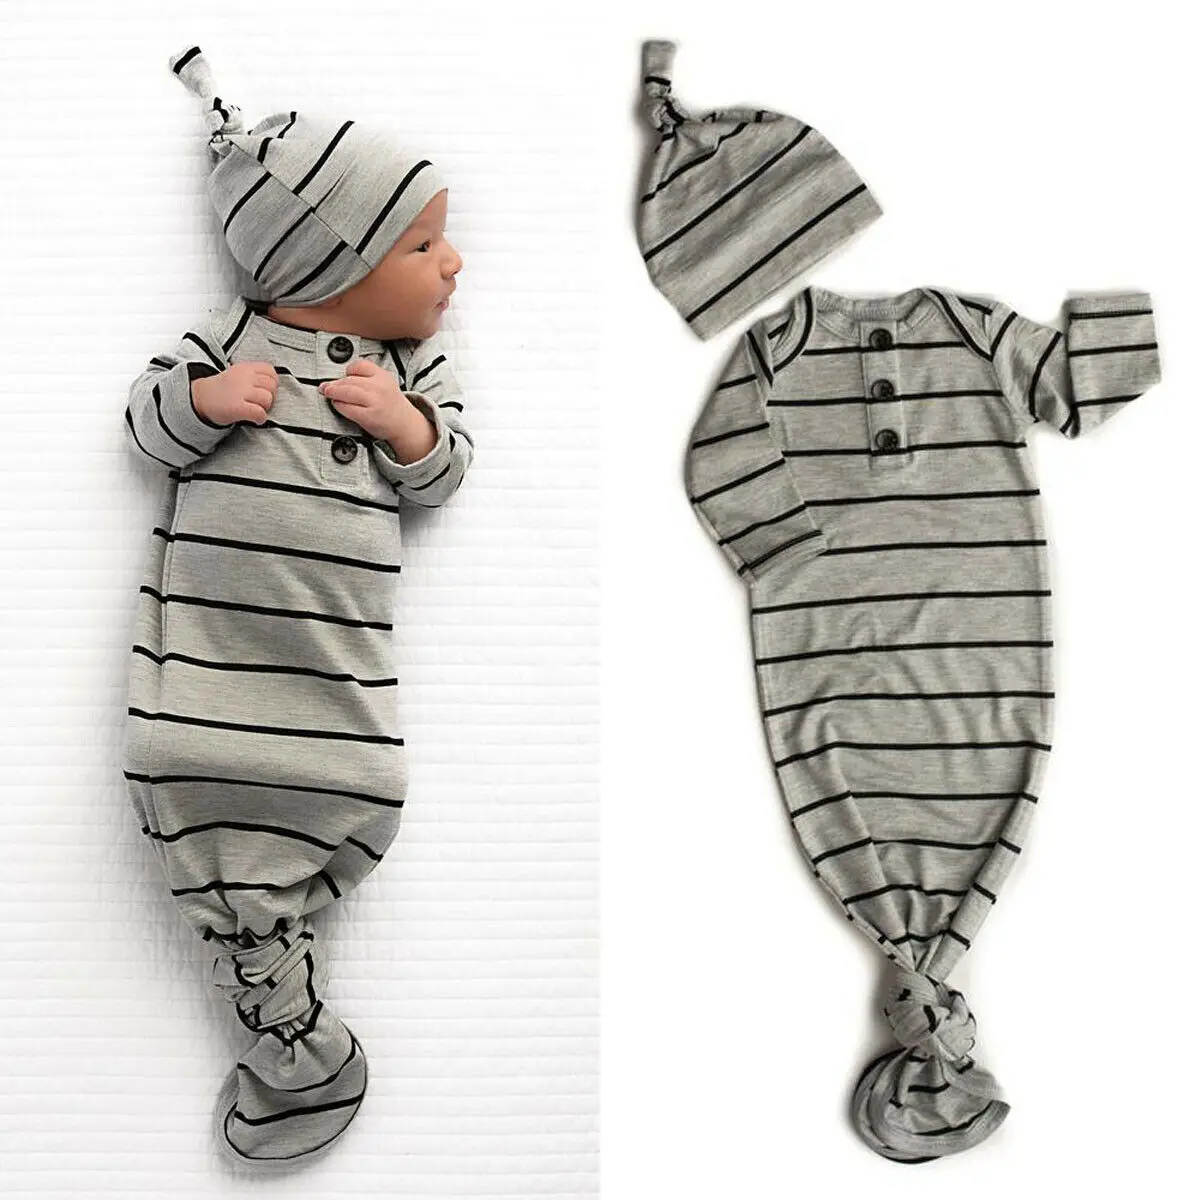 Новорожденный Младенец спальный мешок Пеленать Обернуть постельные принадлежности одежда шляпа наряд набор AU